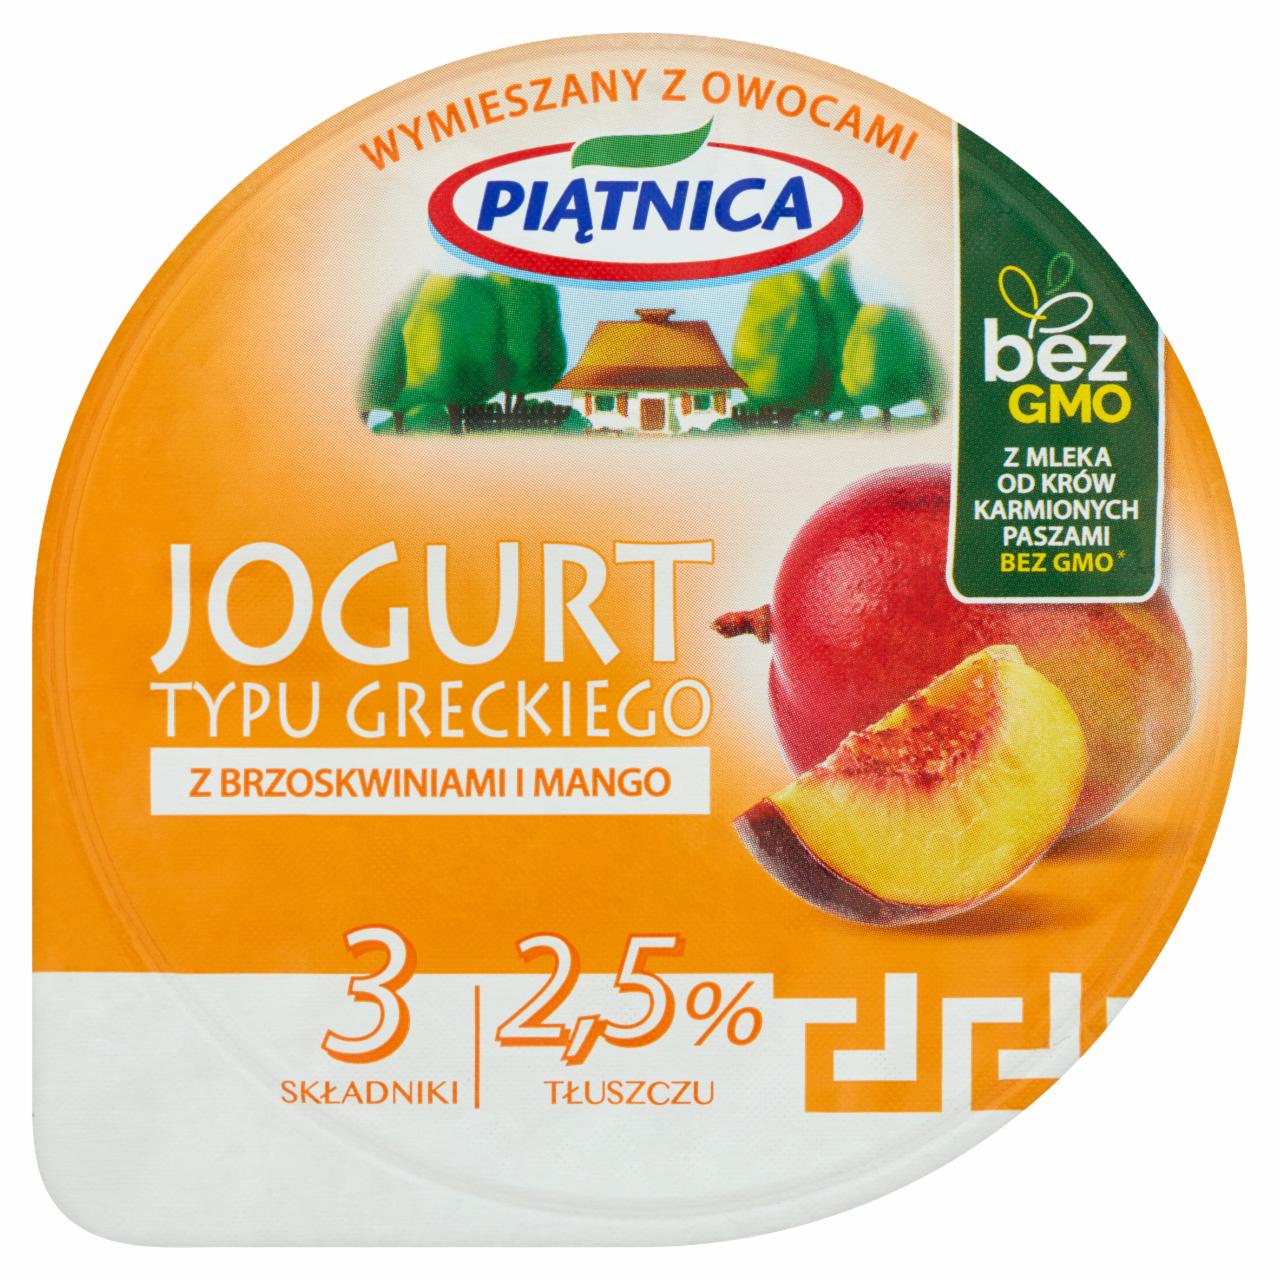 Zdjęcia - Piątnica Jogurt typu greckiego z brzoskwiniami i mango 150 g